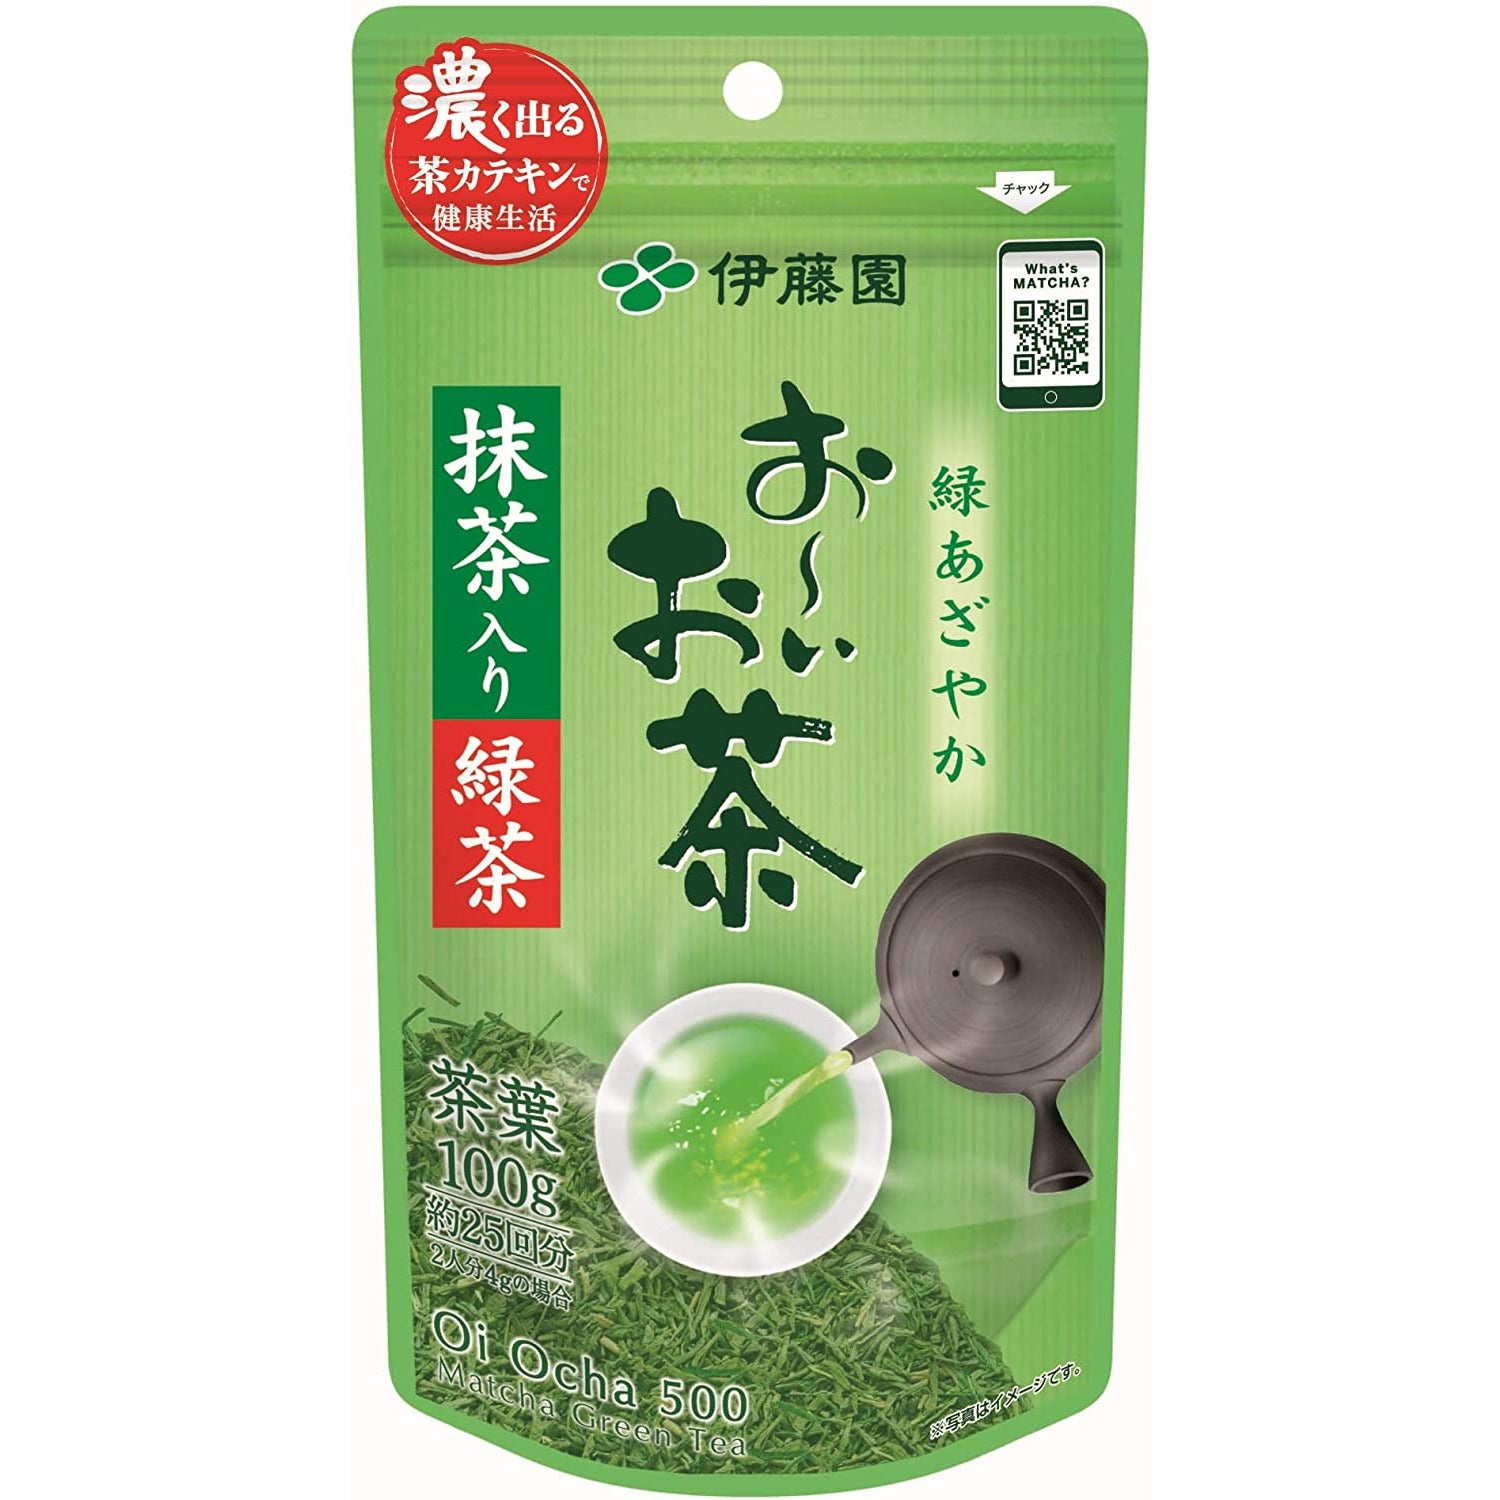 Itoen Oi Ocha Green Tea with Matcha Sencha 100g